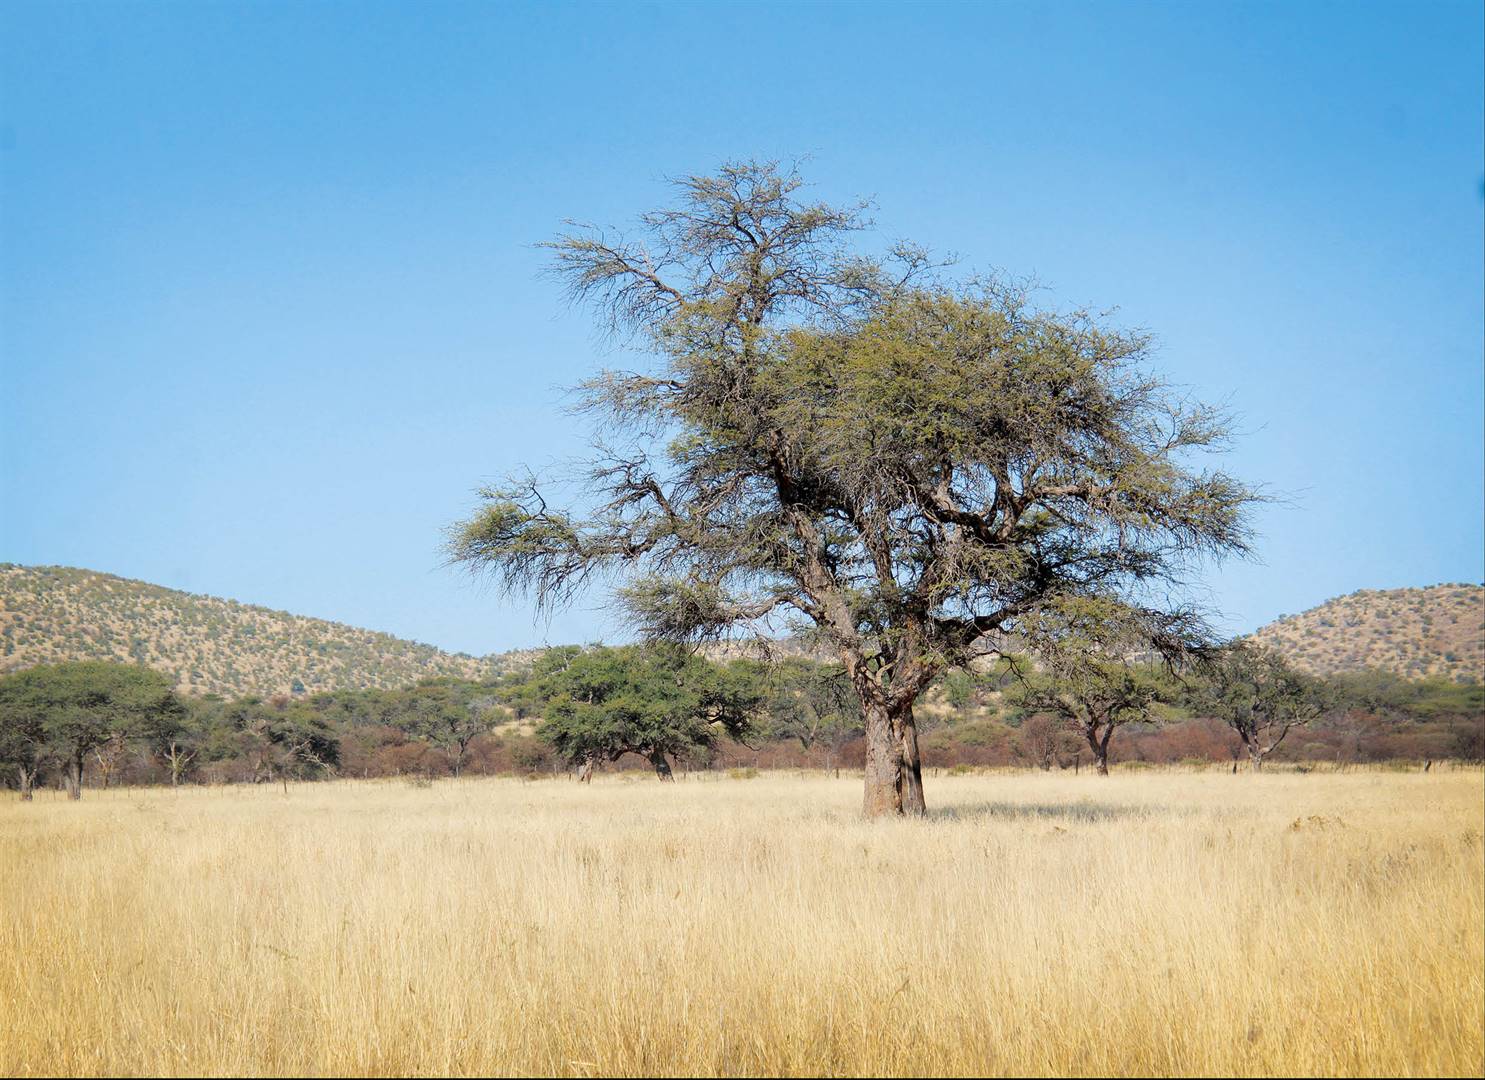 WELIGE WEIDING. Die veld is in ’n uitstekende toestand danksy die baie reën wat Namibië die afgelope somer gekry het. Foto’s:  Charl  van  Rooyen, TENSYANDERS VERMELD